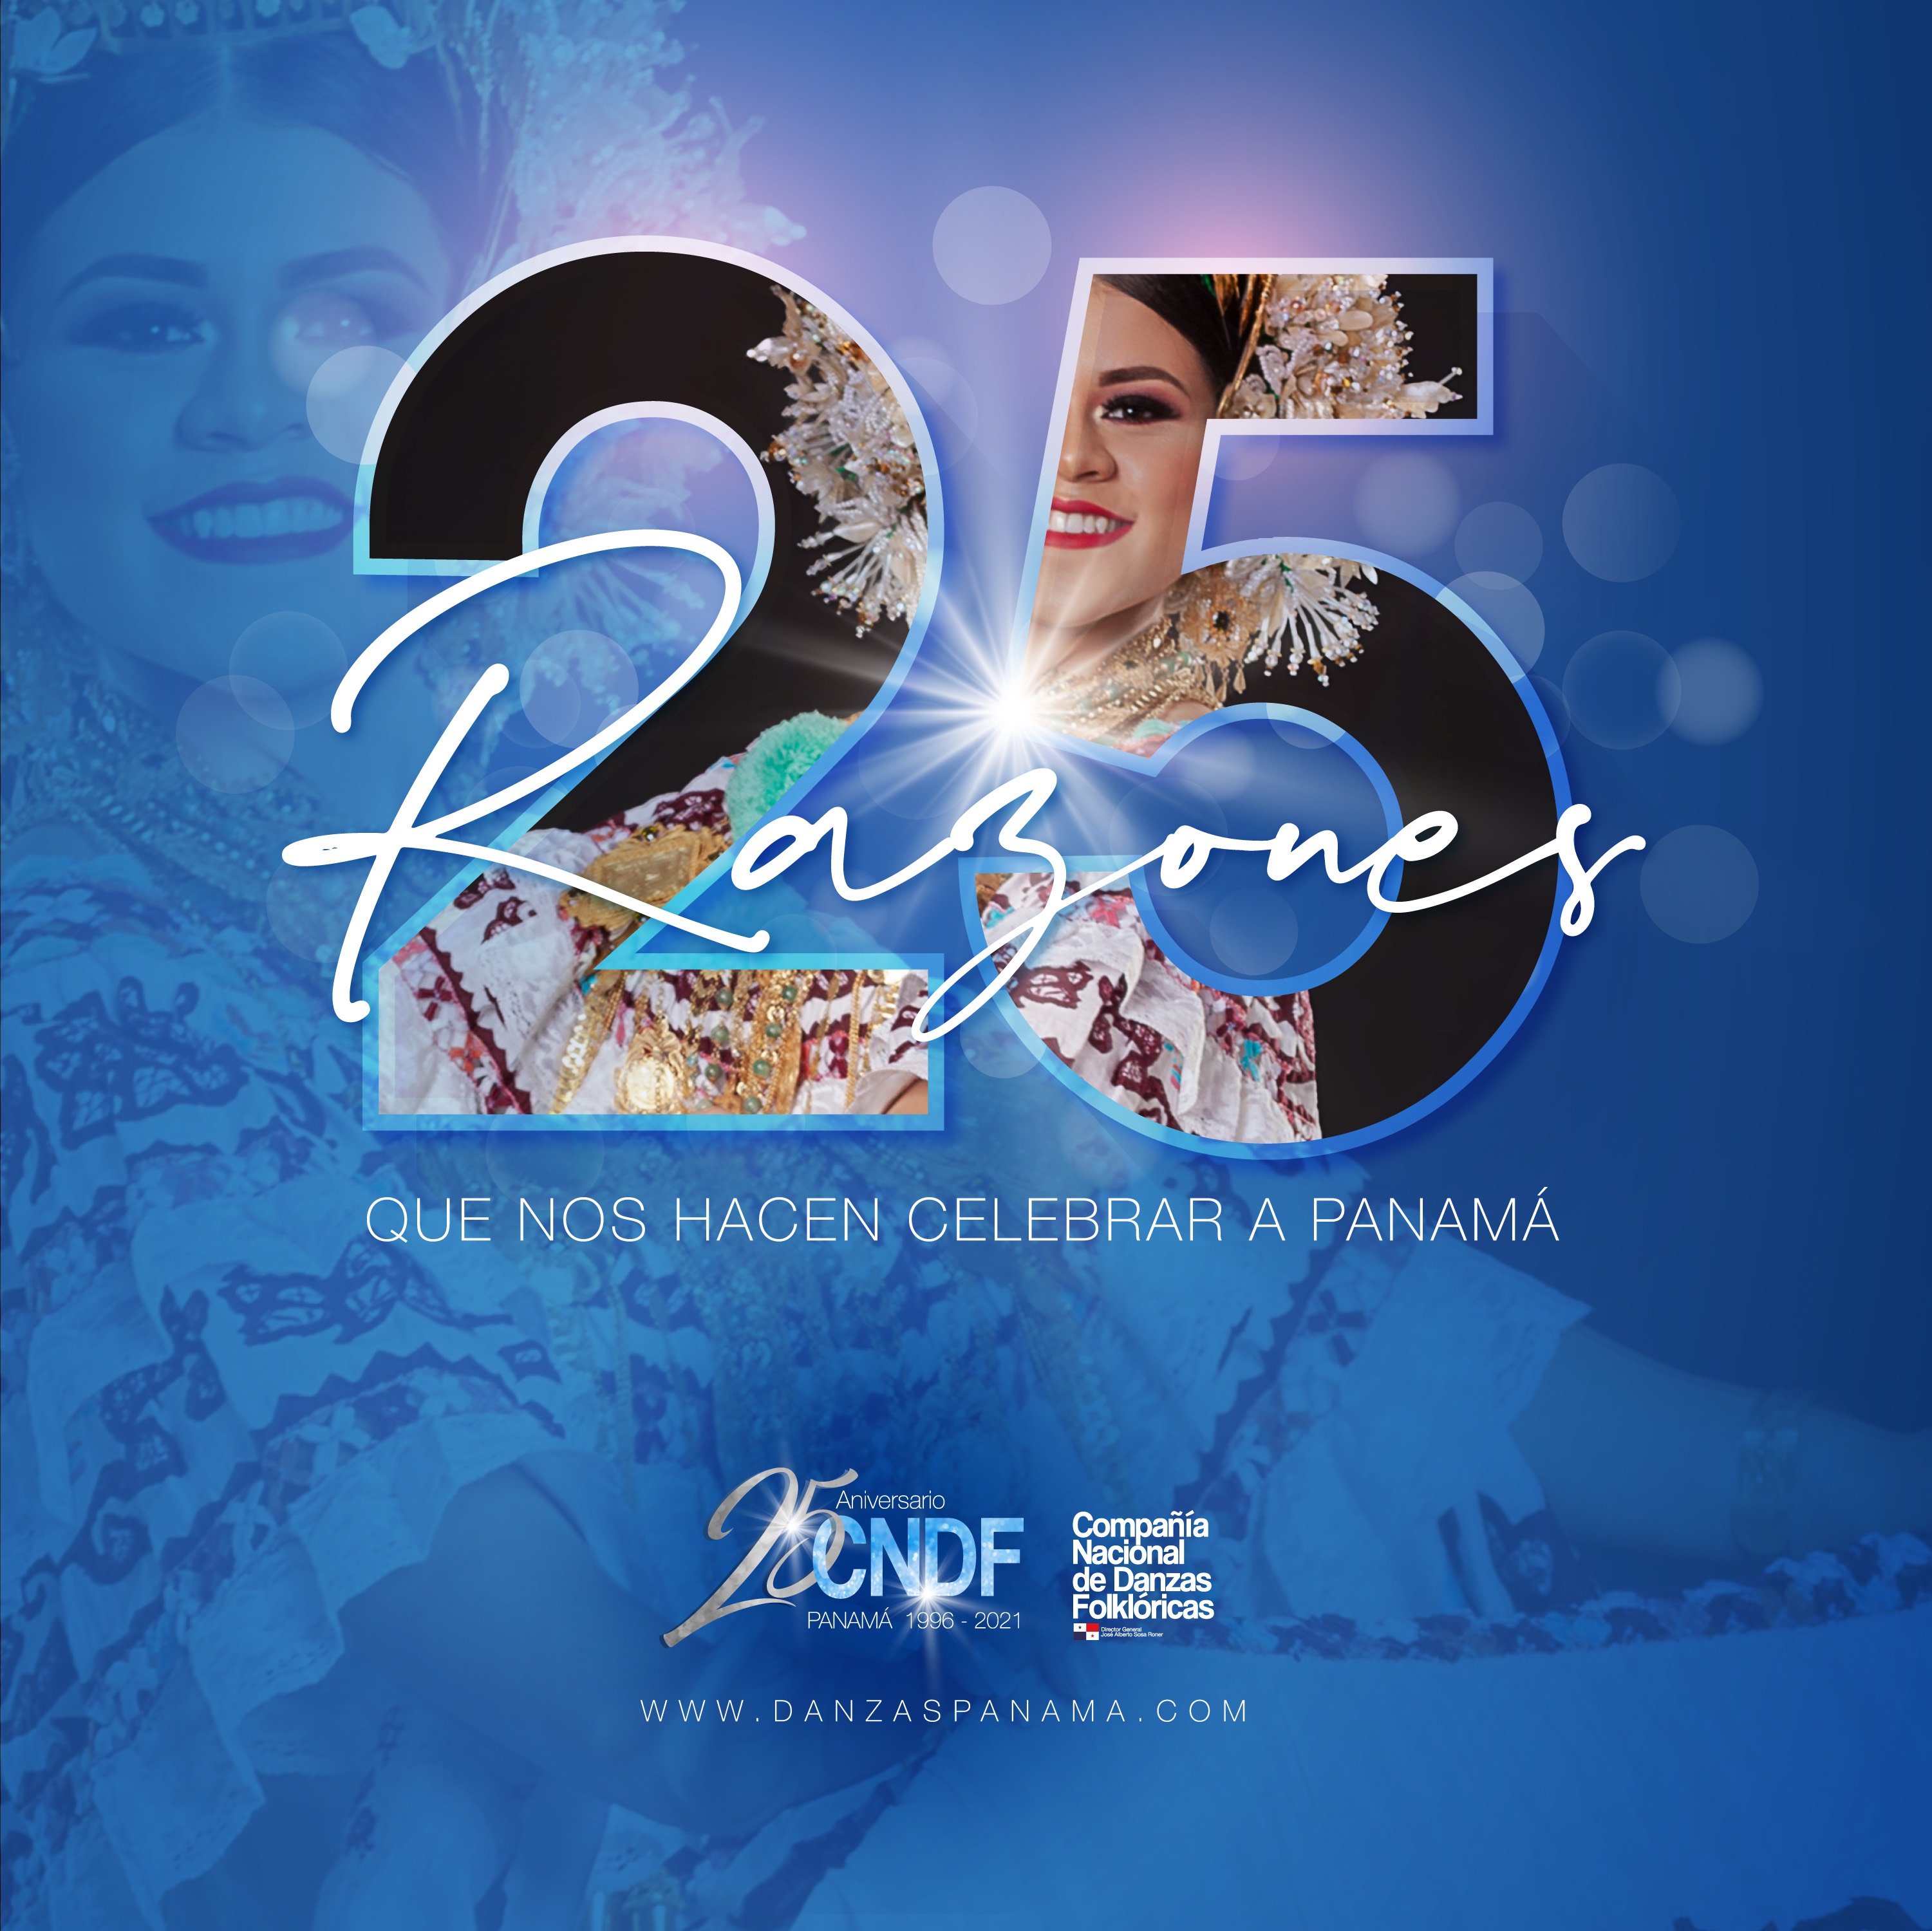 25 ANIVERSARIO DE LA COMPAÑÍA NACIONAL DE DANZAS FOLKLÓRICAS DE PANAMÁ |  Danzas Panamá | Compañía Nacional de Danzas Folklóricas